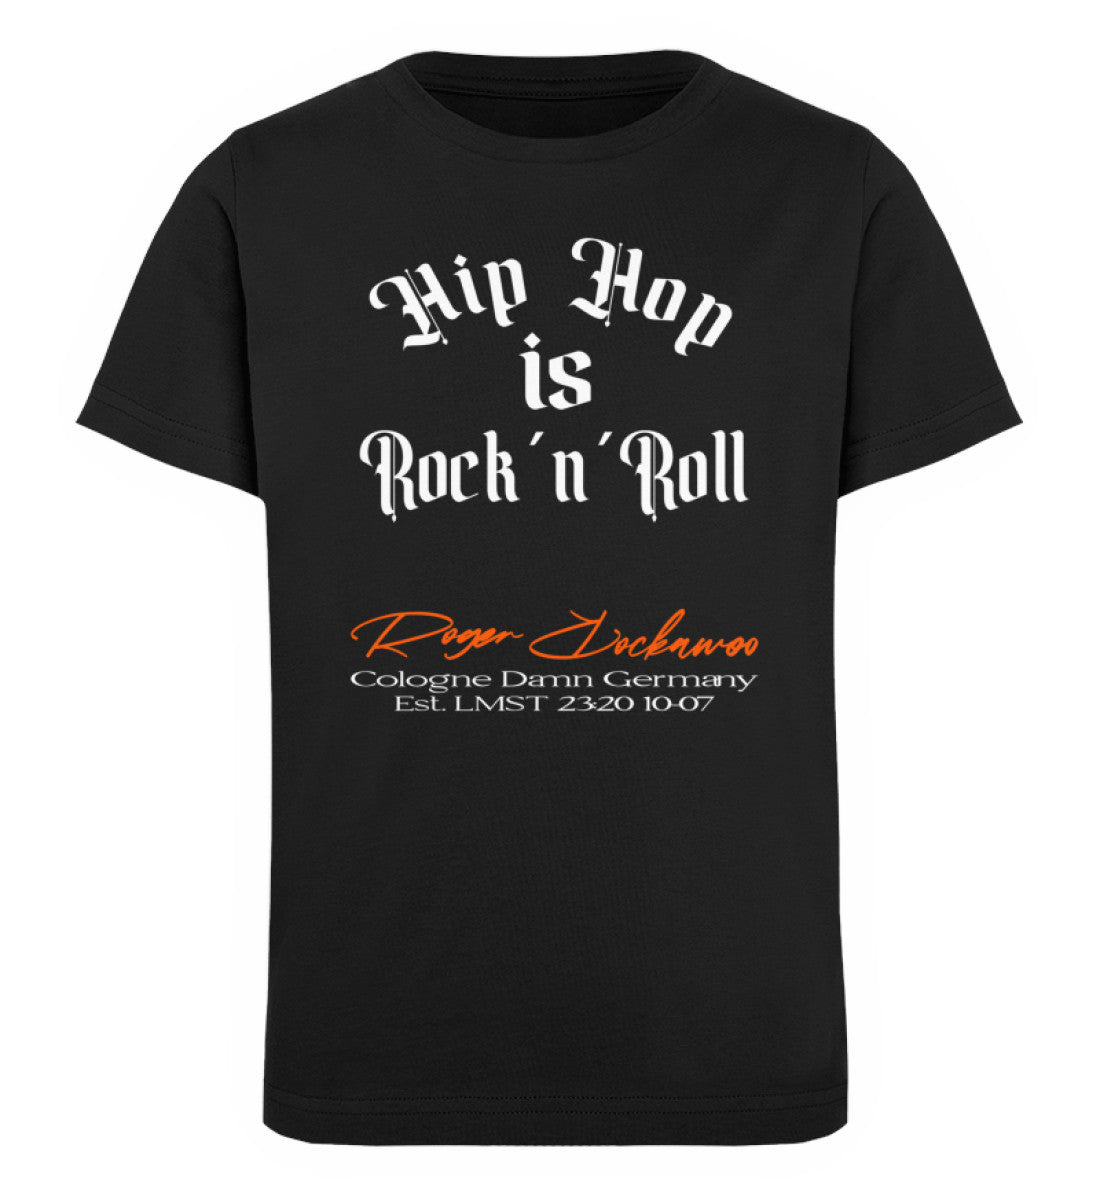 Schwarzes Kinder T-Shirt für Mädchen und Jungen bedruckt mit dem Design der Roger Rockawoo hip hop is rocknroll